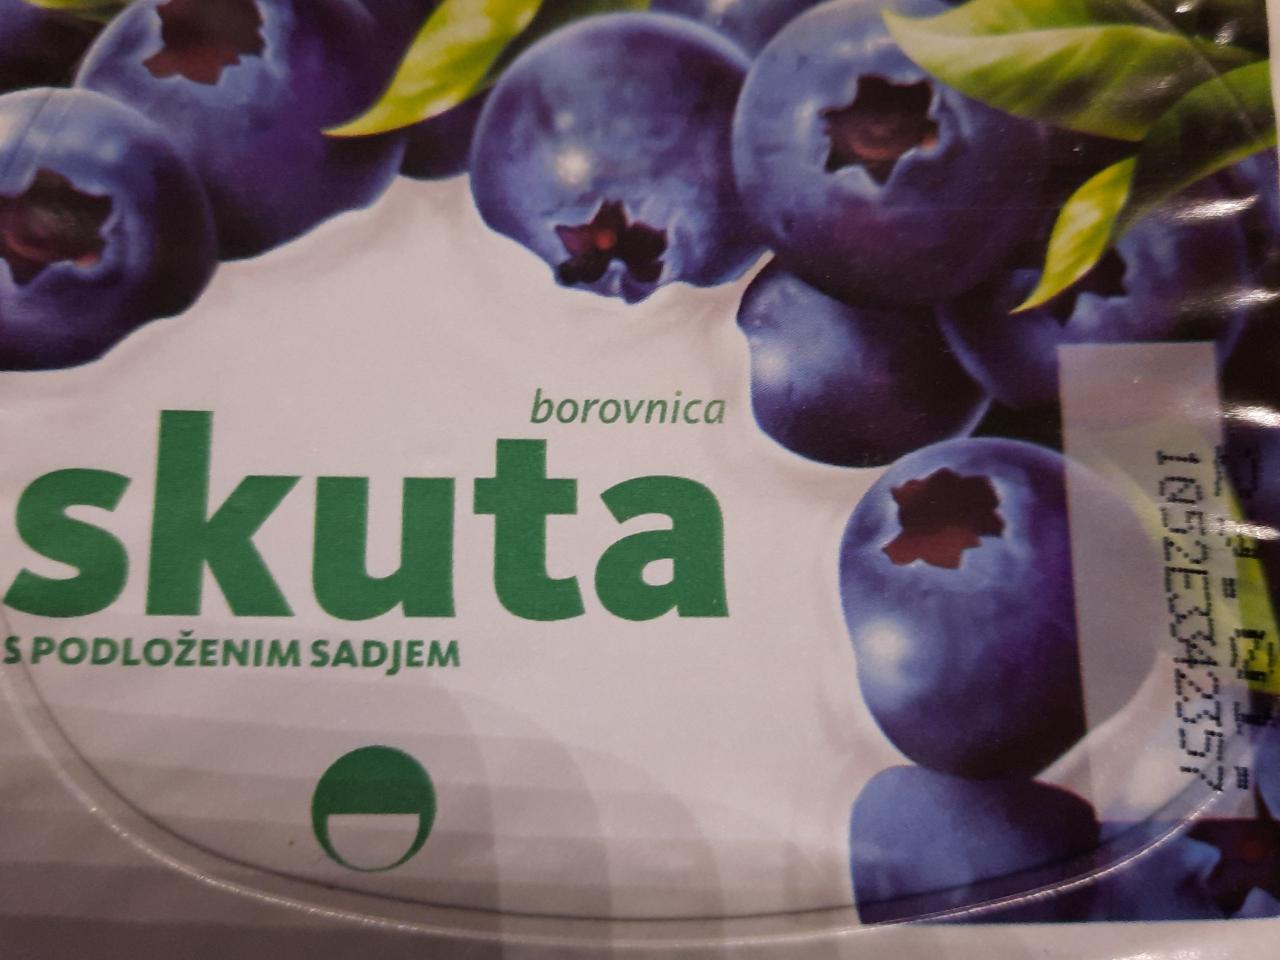 Fotografie - Skuta borovnica s podloženim sadjem Ljubljanske mlekarne